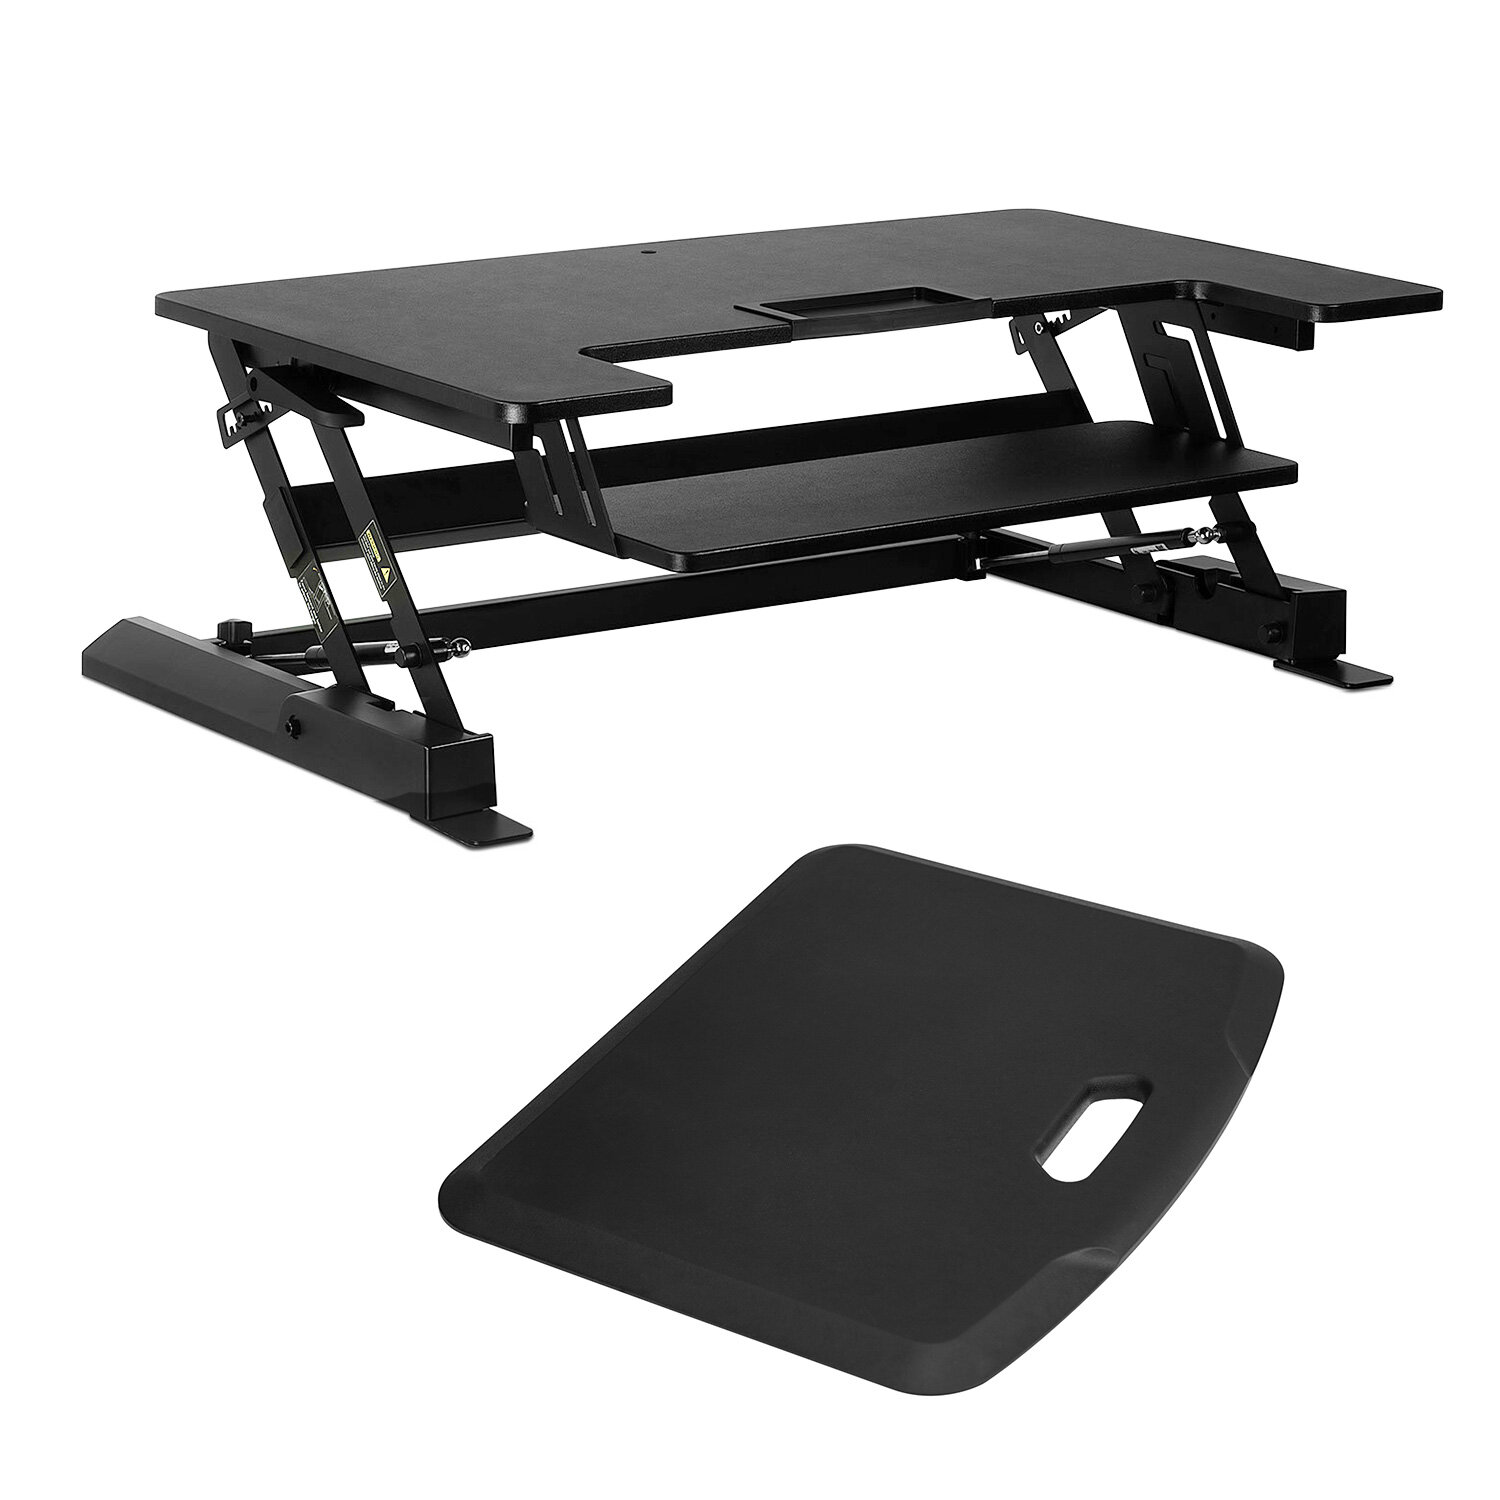 https://assets.wfcdn.com/im/62225039/compr-r85/1064/106403001/mount-it-active-essentials-ergonomic-office-bundle-standing-desk-converter-soft-mat.jpg